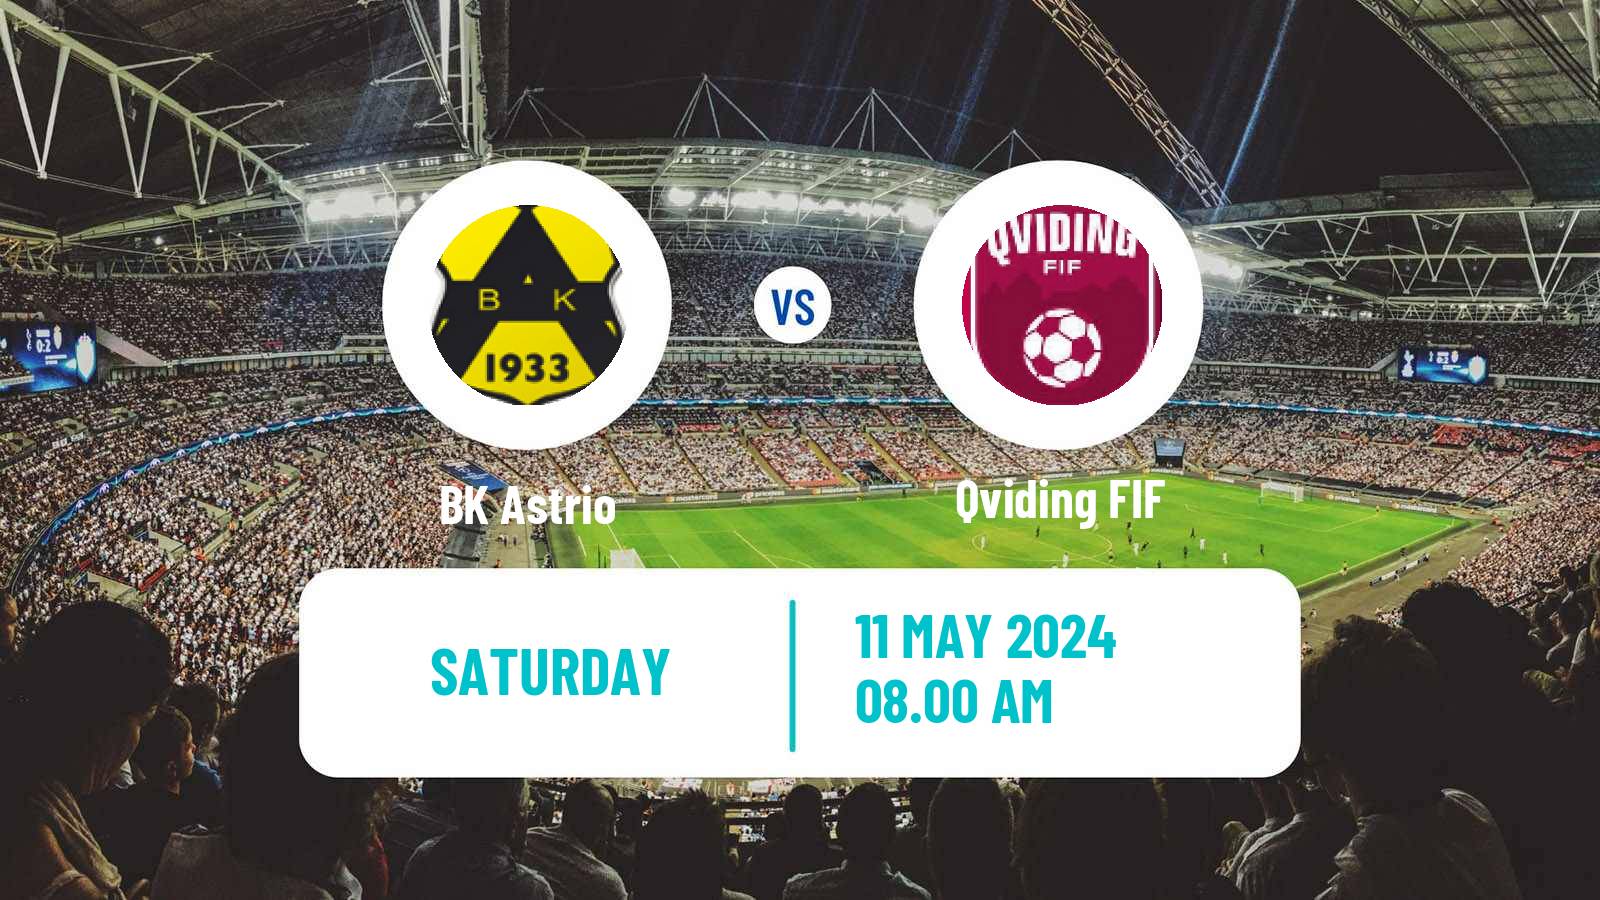 Soccer Swedish Division 2 - Västra Götaland Astrio - Qviding